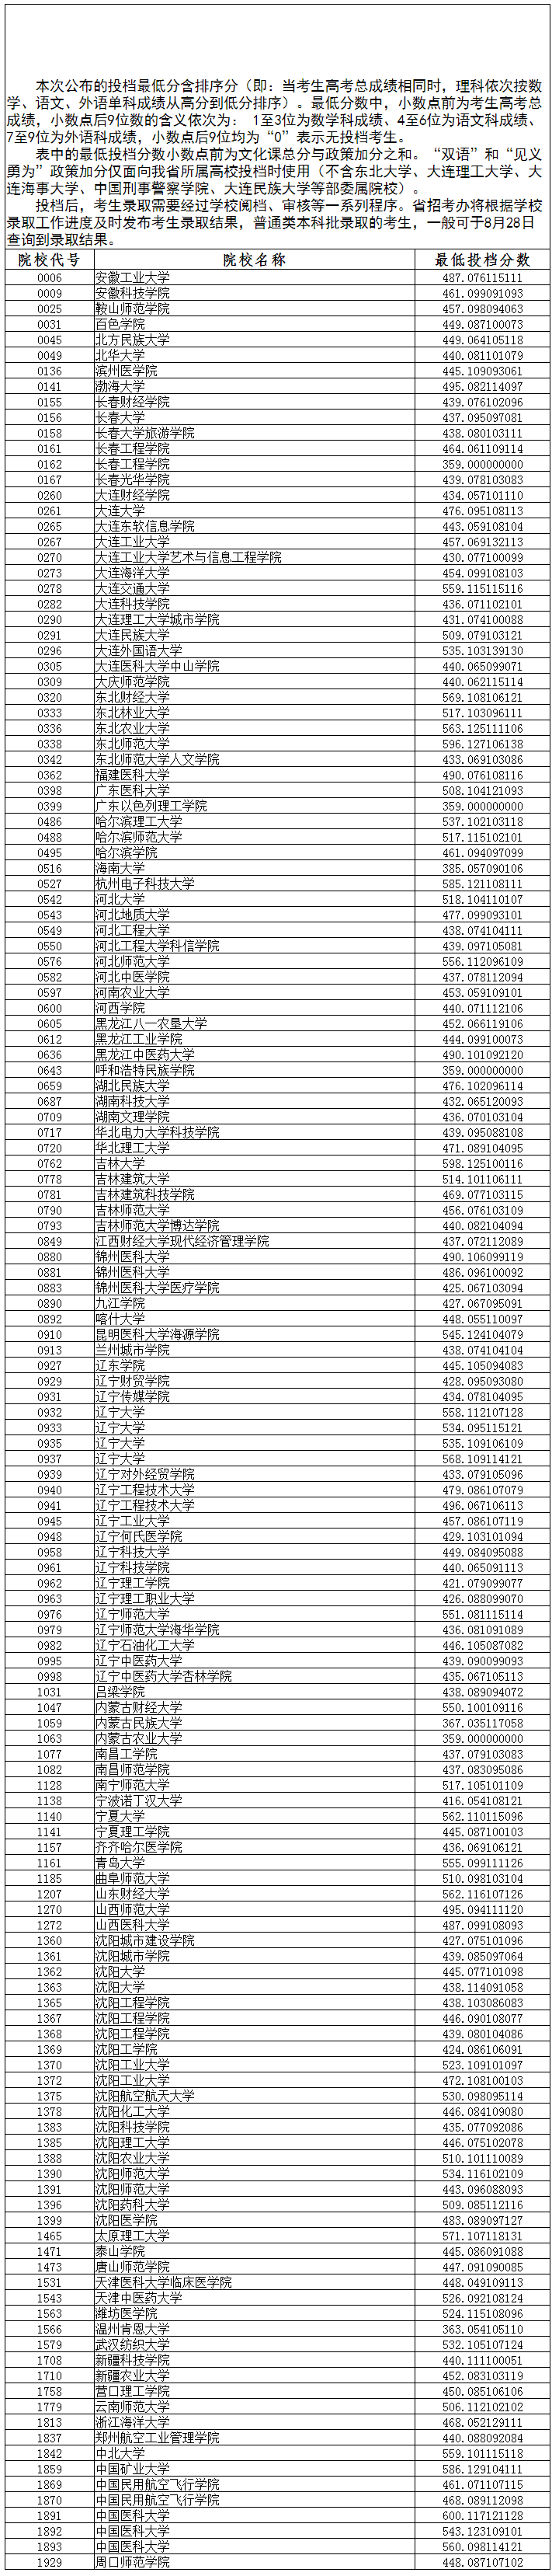 2020辽宁高考本科批征集志愿投档最低分及院校代号一览表